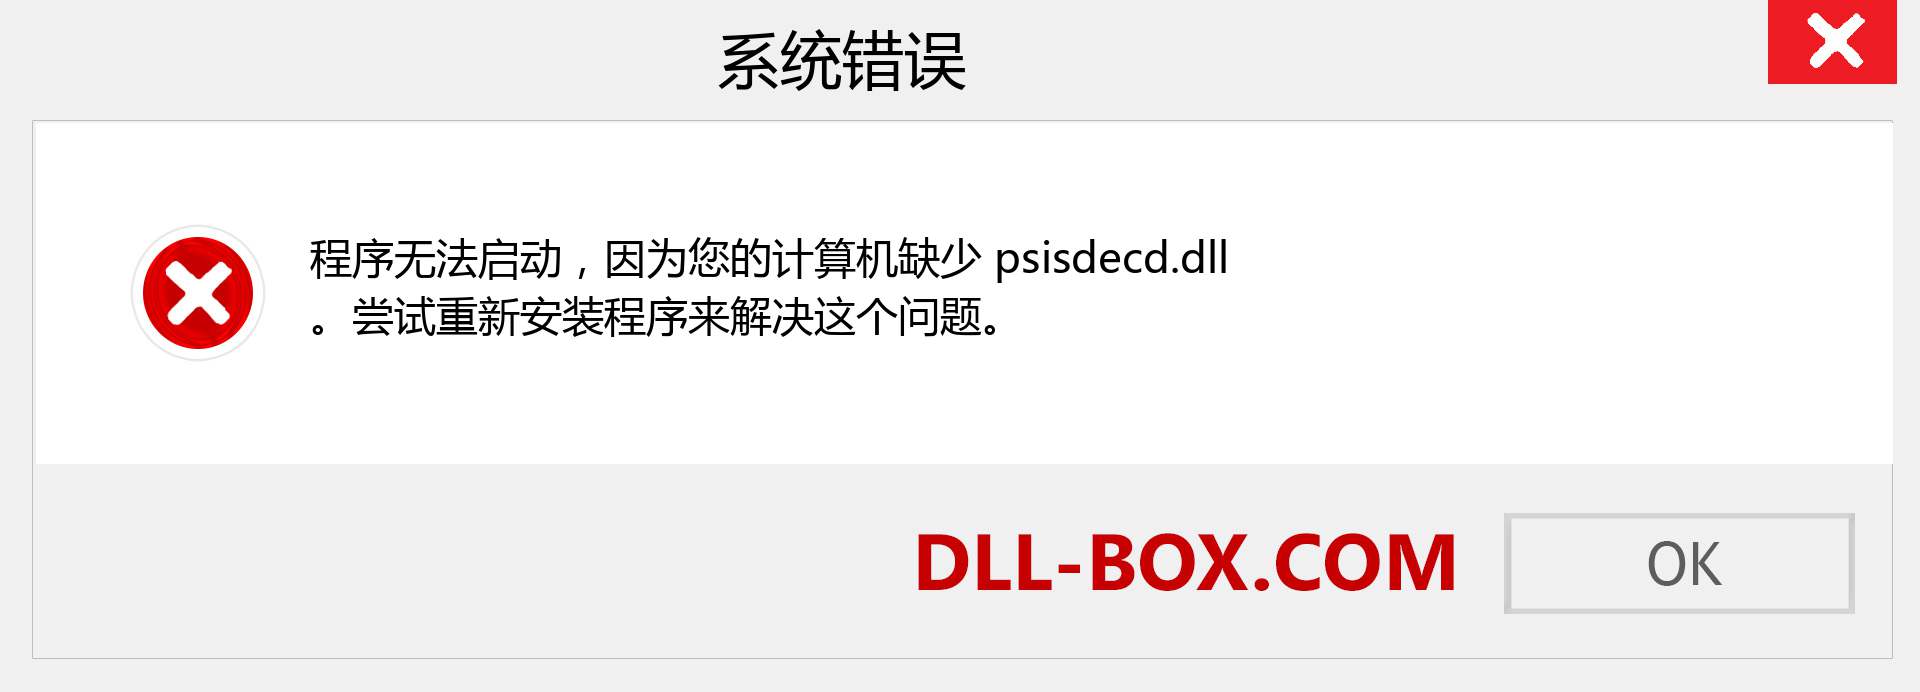 psisdecd.dll 文件丢失？。 适用于 Windows 7、8、10 的下载 - 修复 Windows、照片、图像上的 psisdecd dll 丢失错误